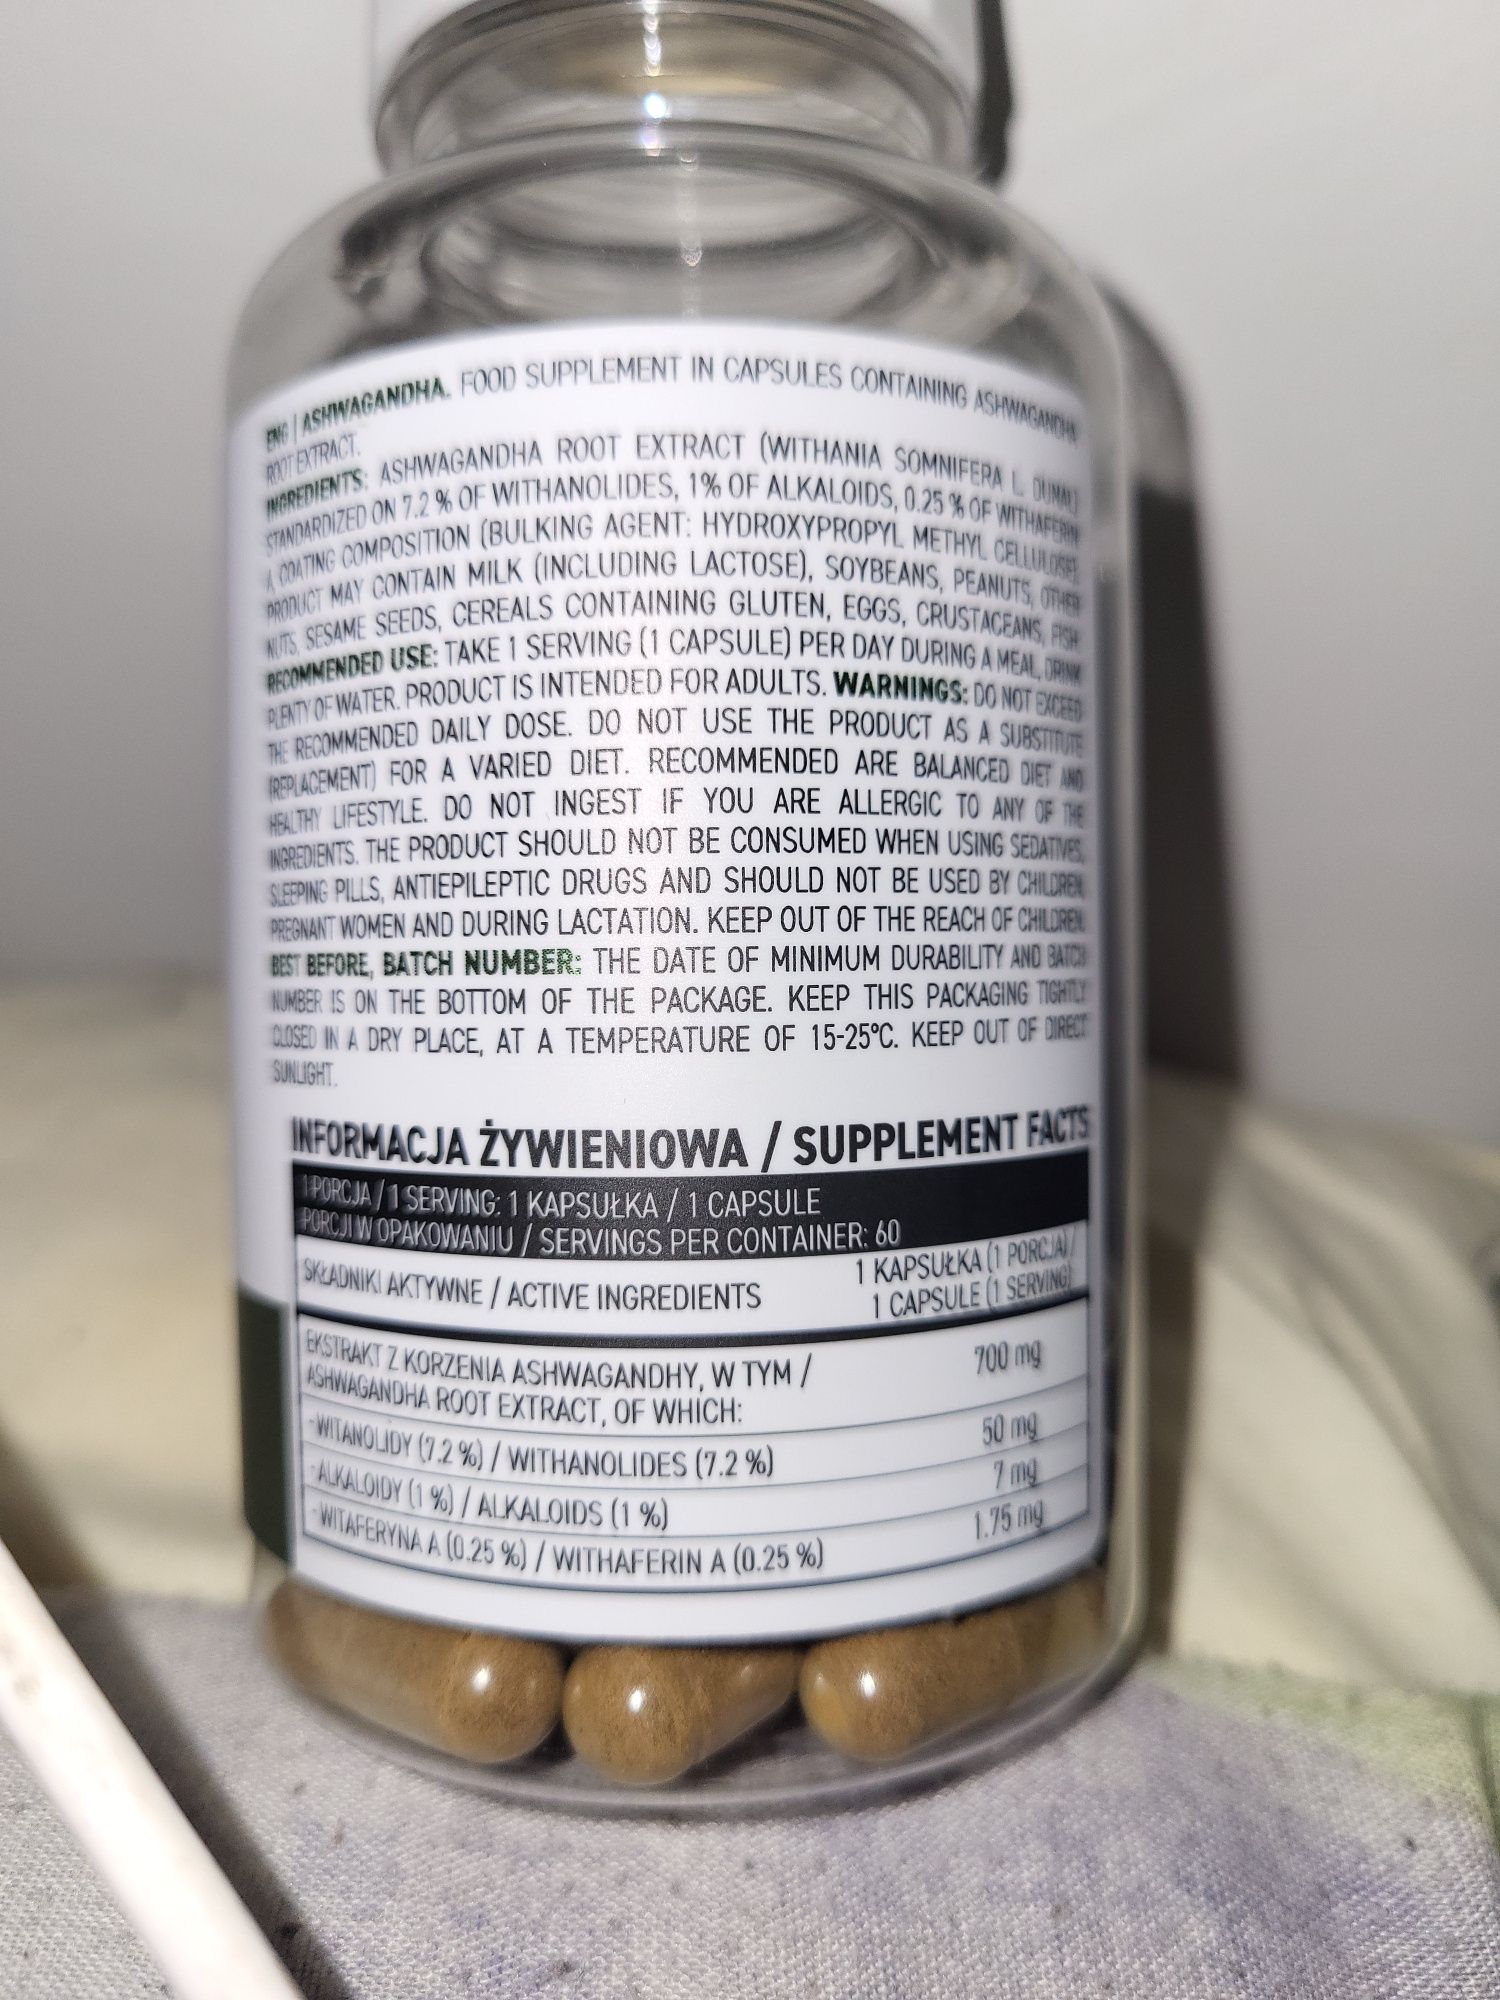 Ashwagandha ostrovit 50 mg witanolidów w jednej porcji-1 kapsułka